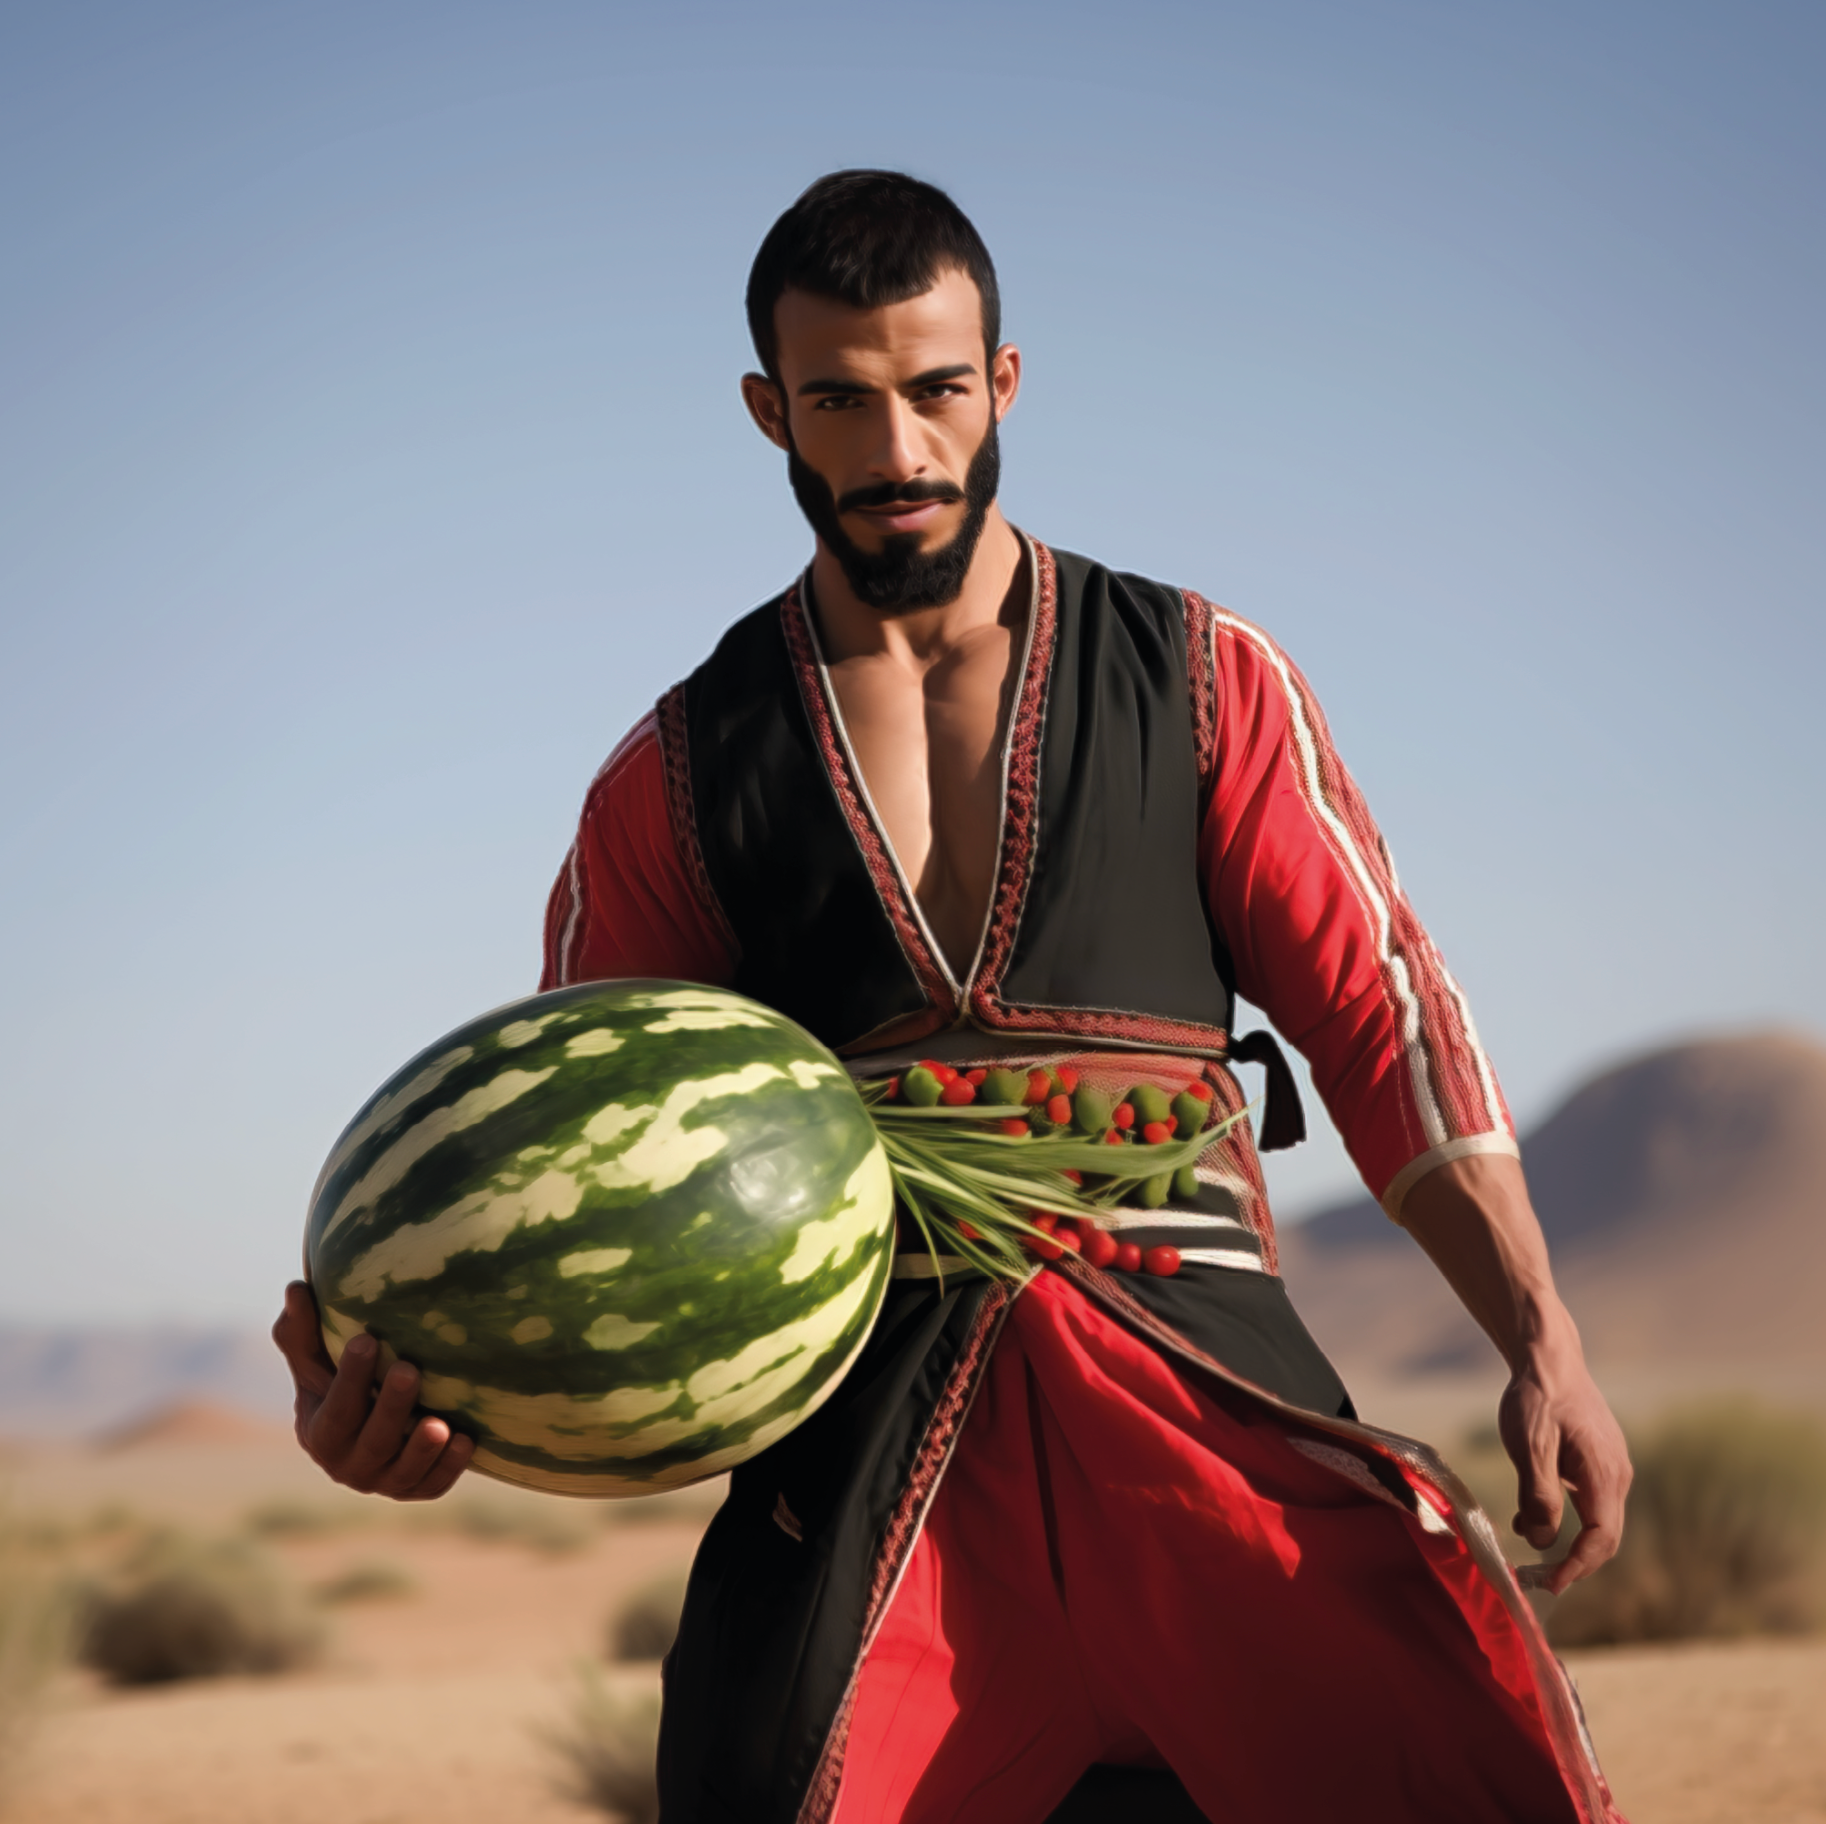 Watermelon Farmer by Lateefa bint Maktoum